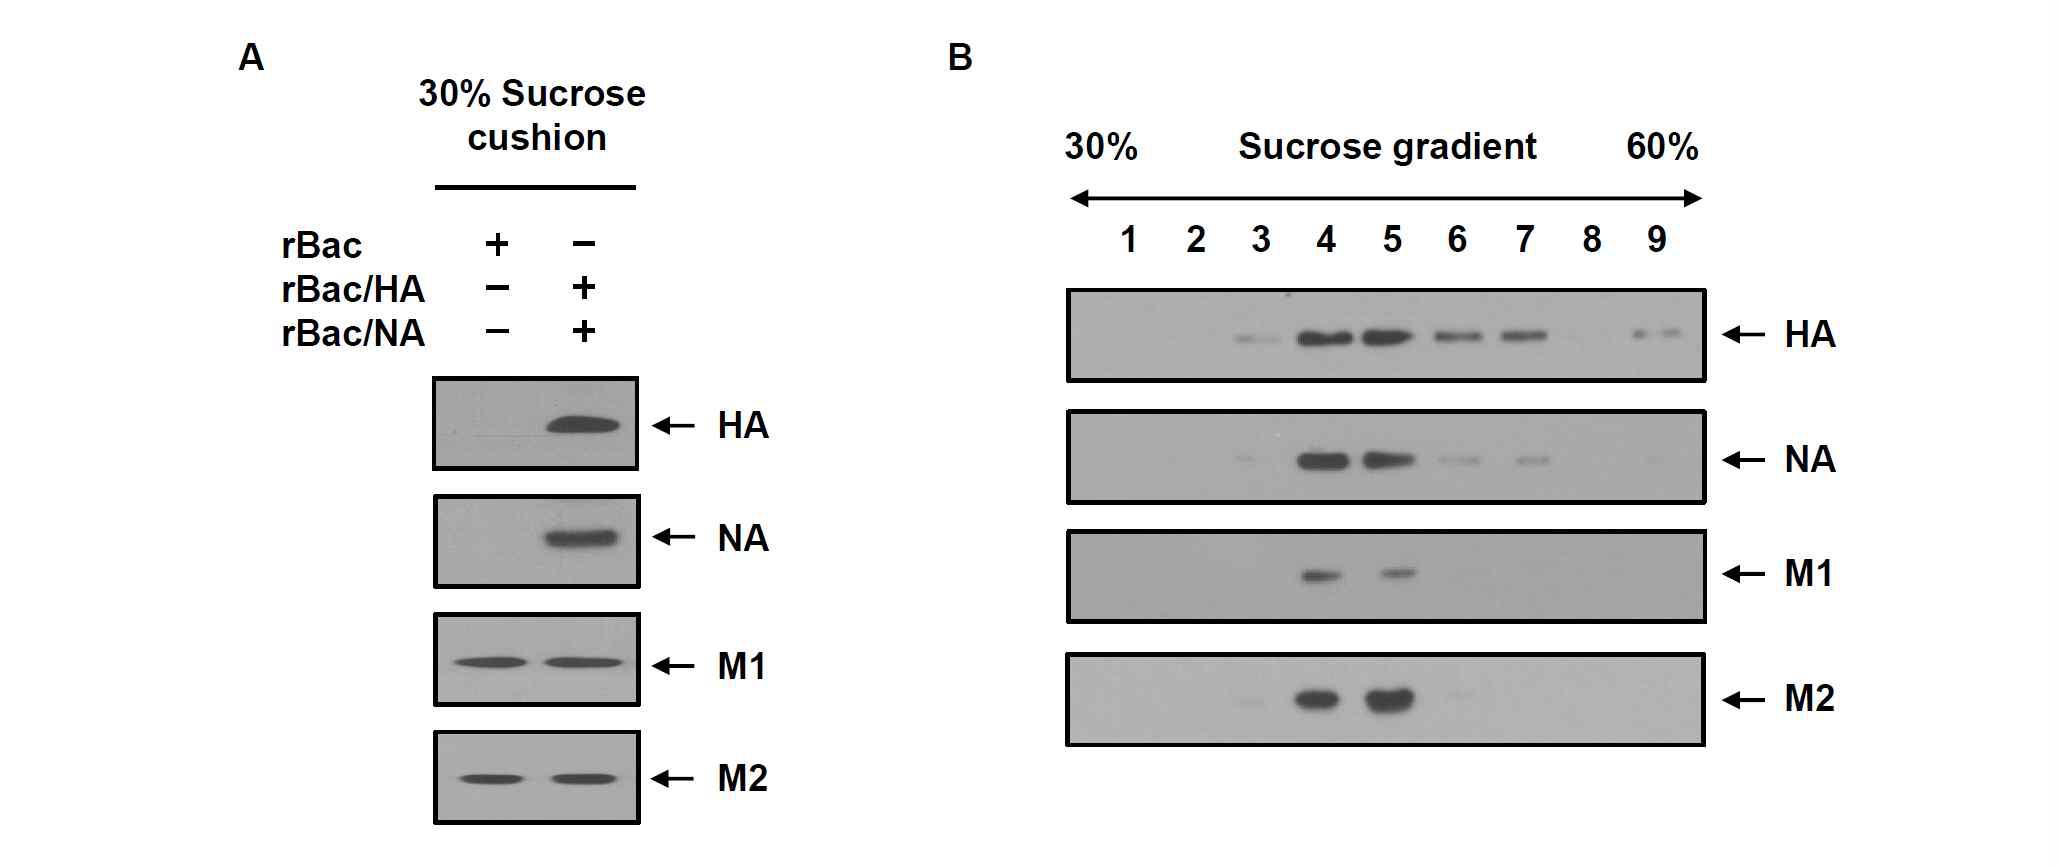 (A) 재조합 배큘로바이러스 rBac/NA, rBac/HA가 감염된 재조합 TN-5B1-4/M1-M2 세포 배양배지를 30% sucrose cushion에서 초원심분리하여 침전물을 확보하고 재조합 인플루엔자 바이러스 M1, M2, NA, HA 단백질의 존재를 Western blot으로 분석함. (B) Sucrose cushion 침전물을 30-60% sucrose density gradient 초원 심분리 방법으로 분획하고 Western blot으로 분석함